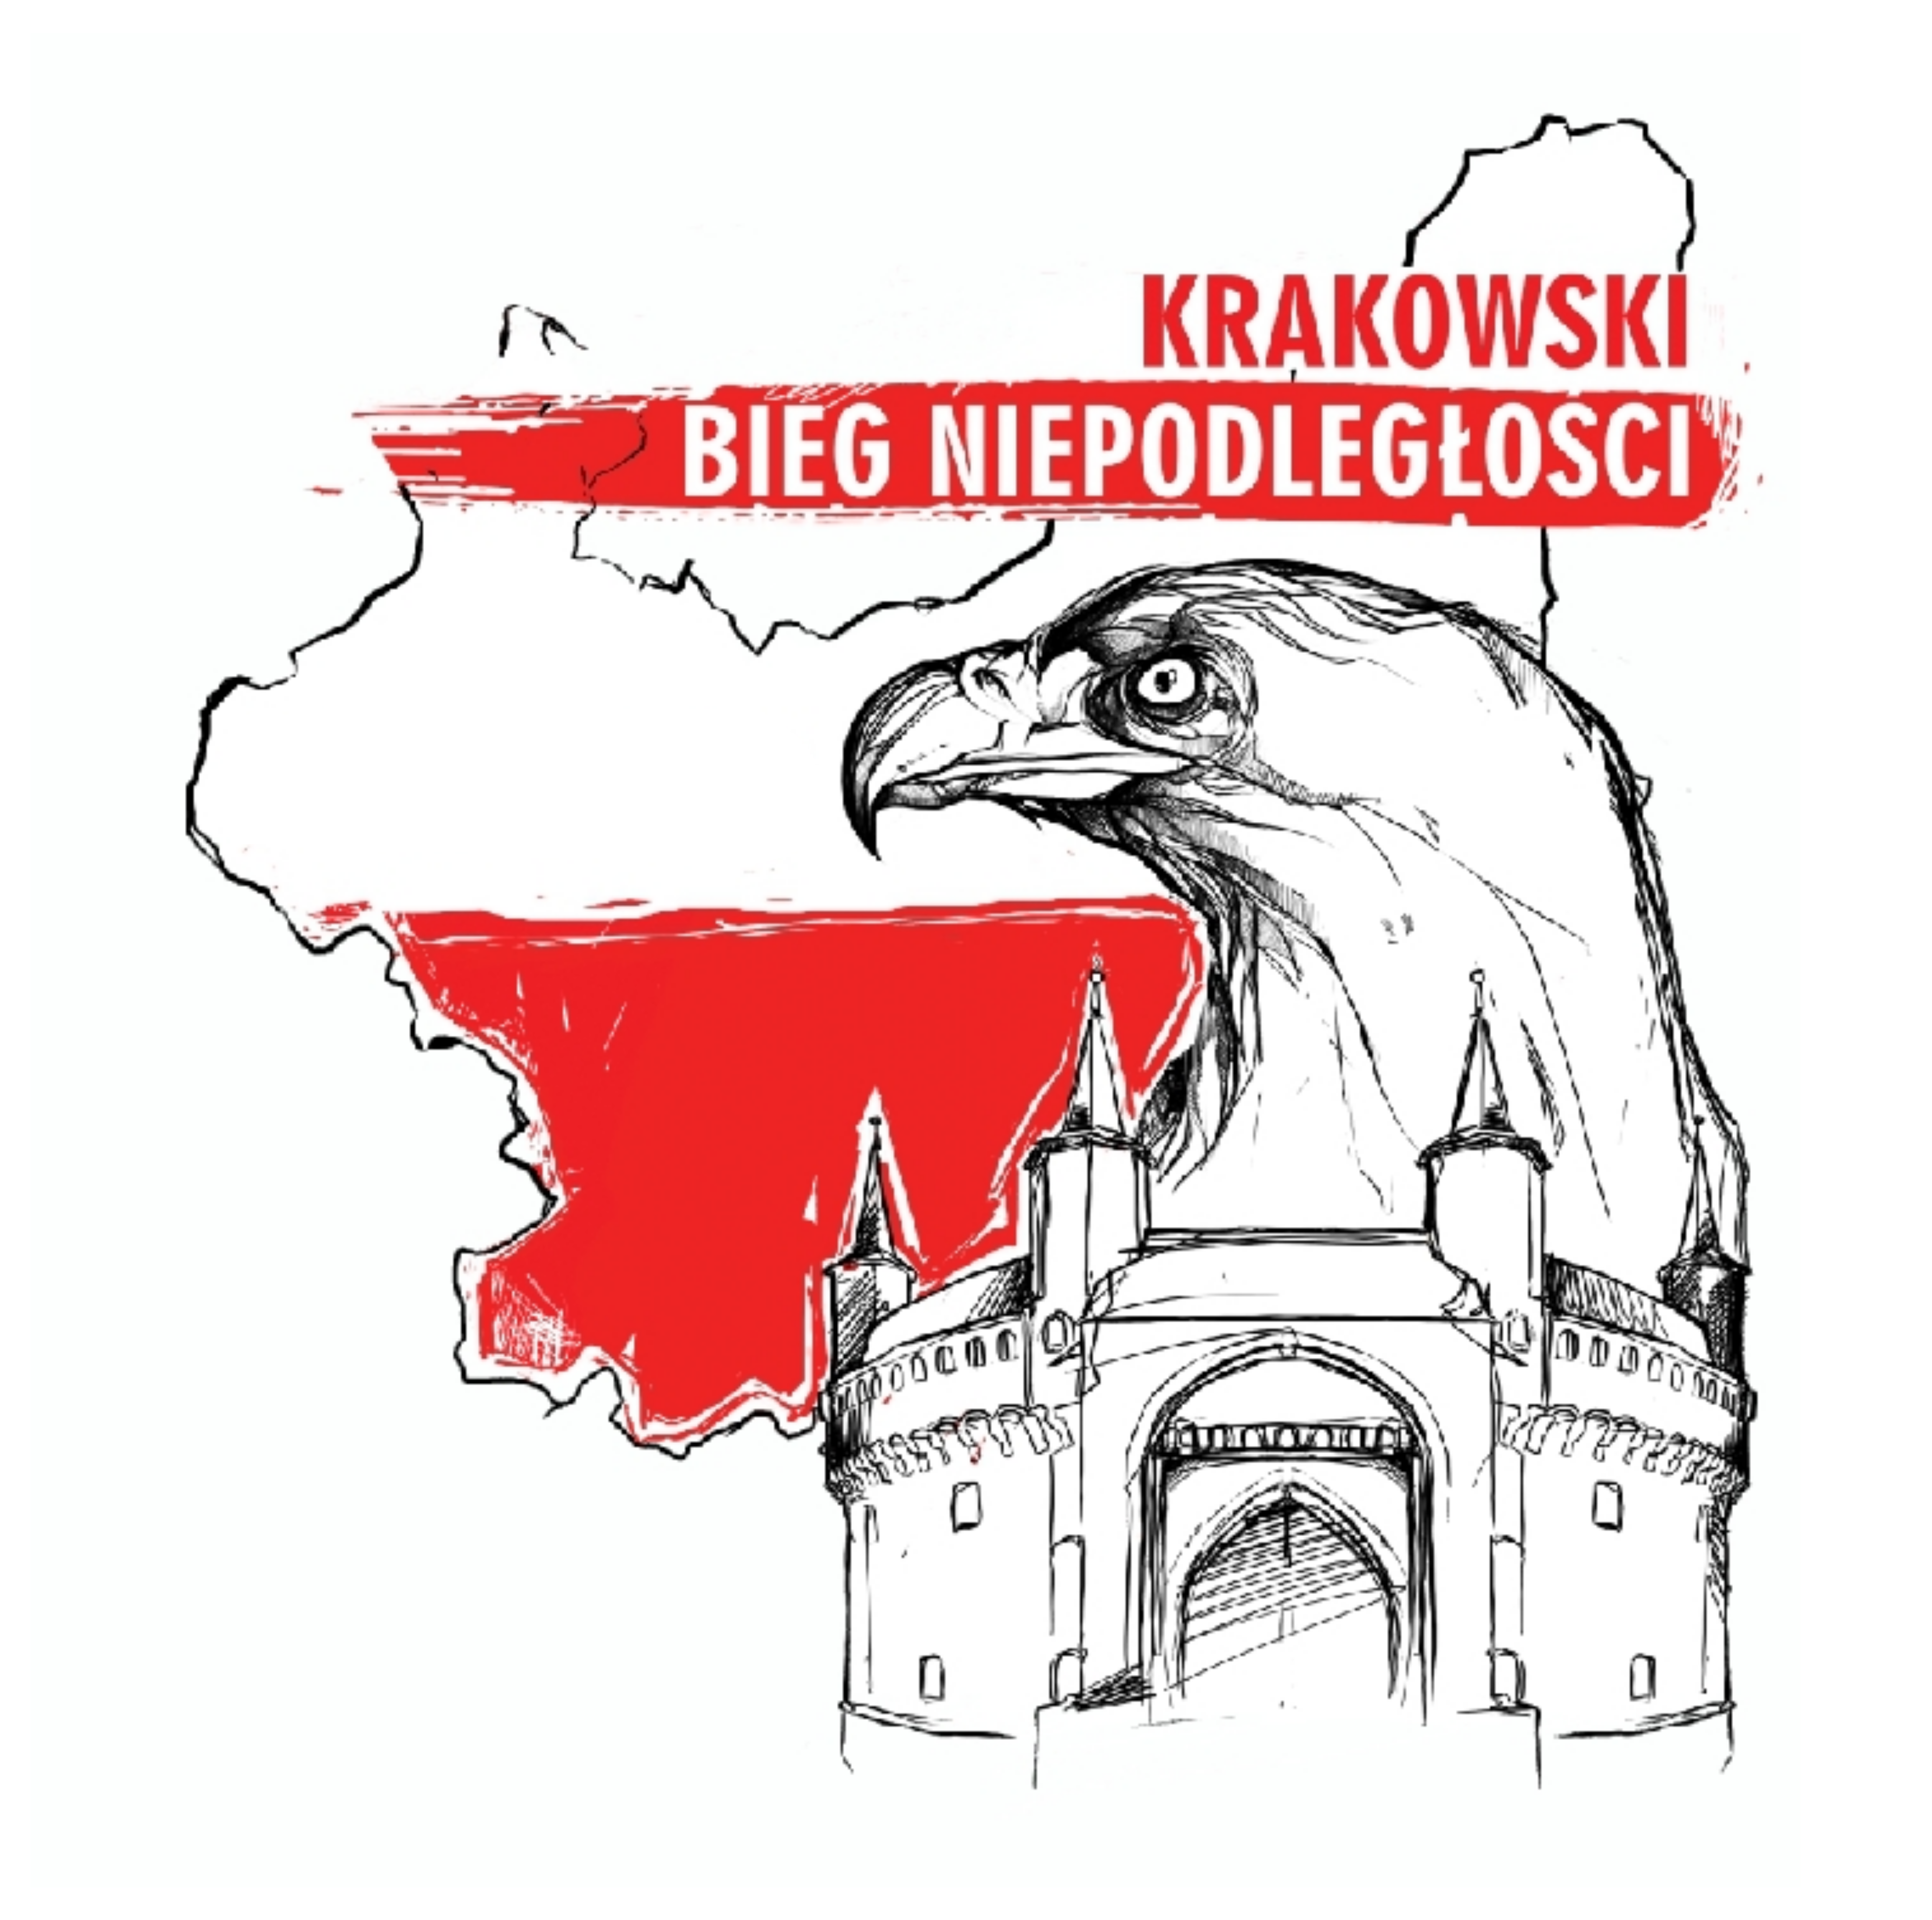 Krakowski Bieg Niepodległości